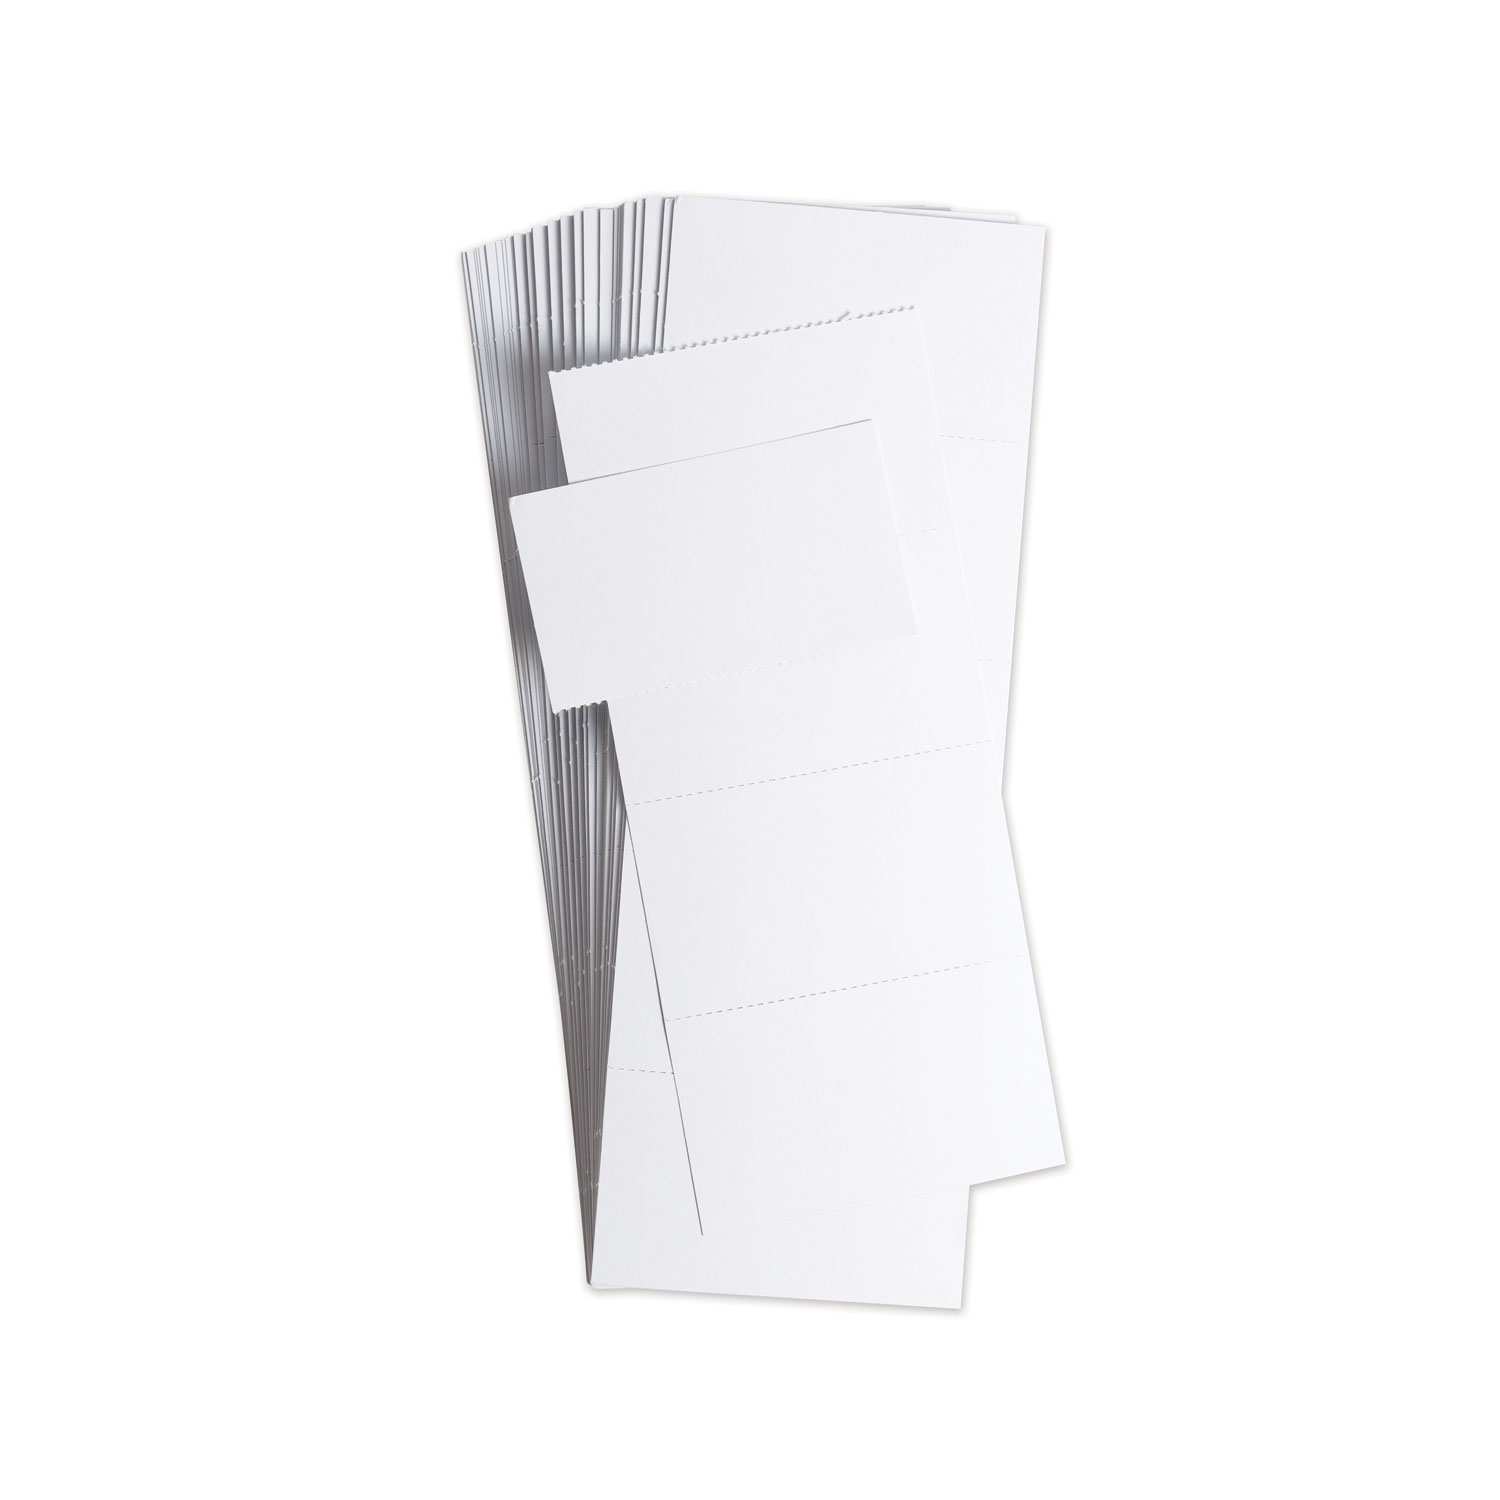  U Brands 5167U06-48 Data Card Replacement, 3 x 1.75, White, 500/Pack (UBRFM1513) 